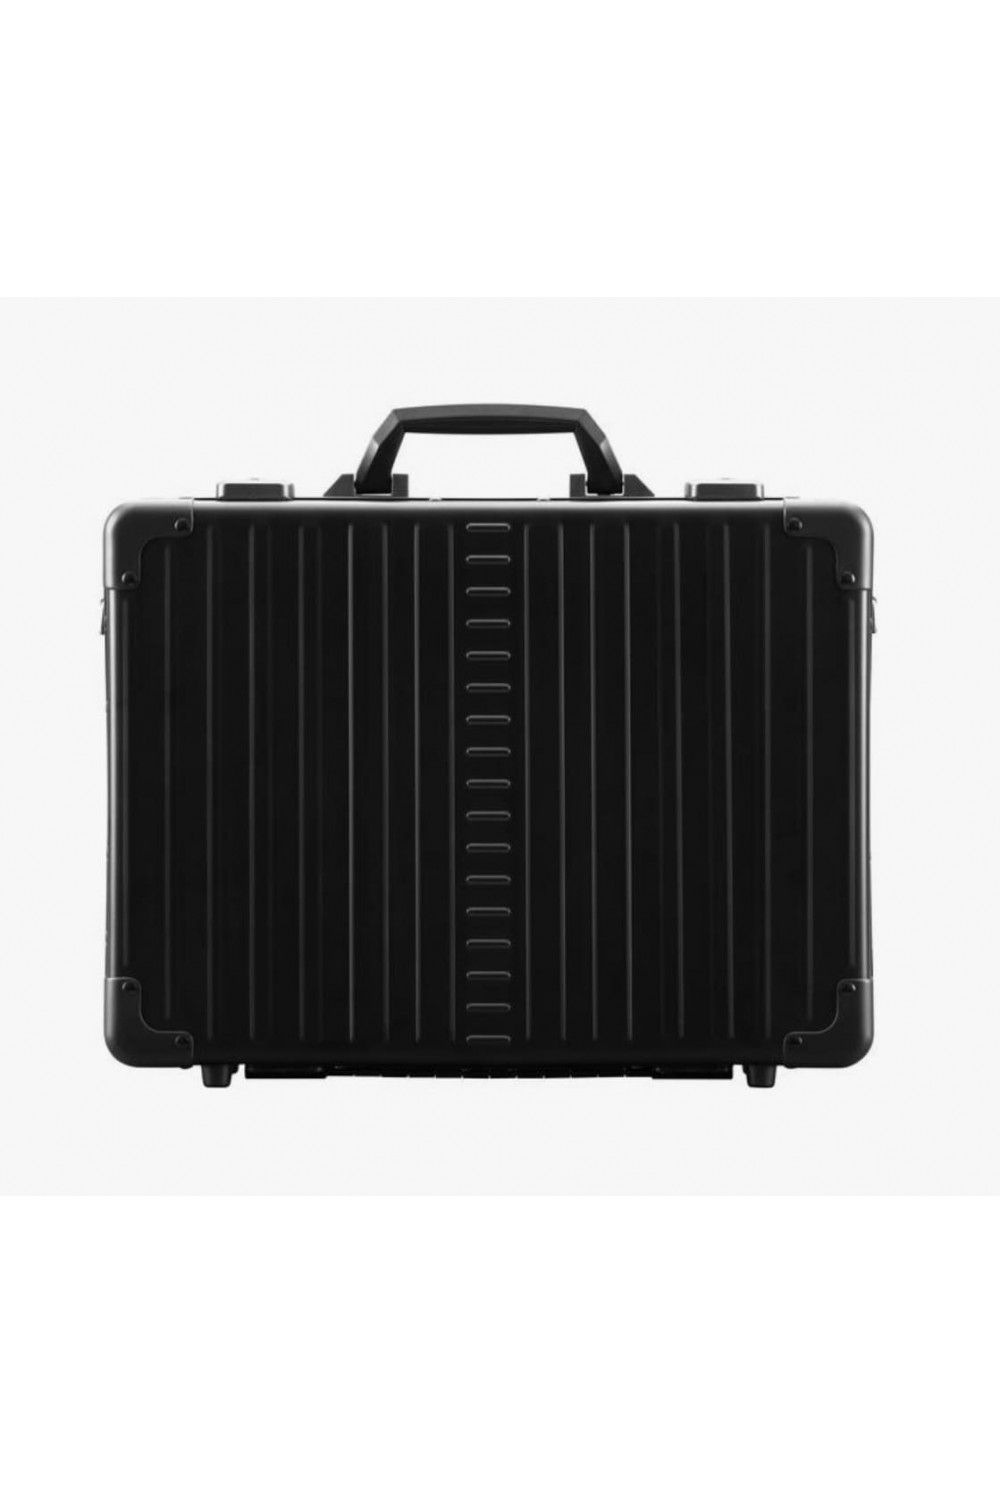 Briefcase aluminum ALEON 17